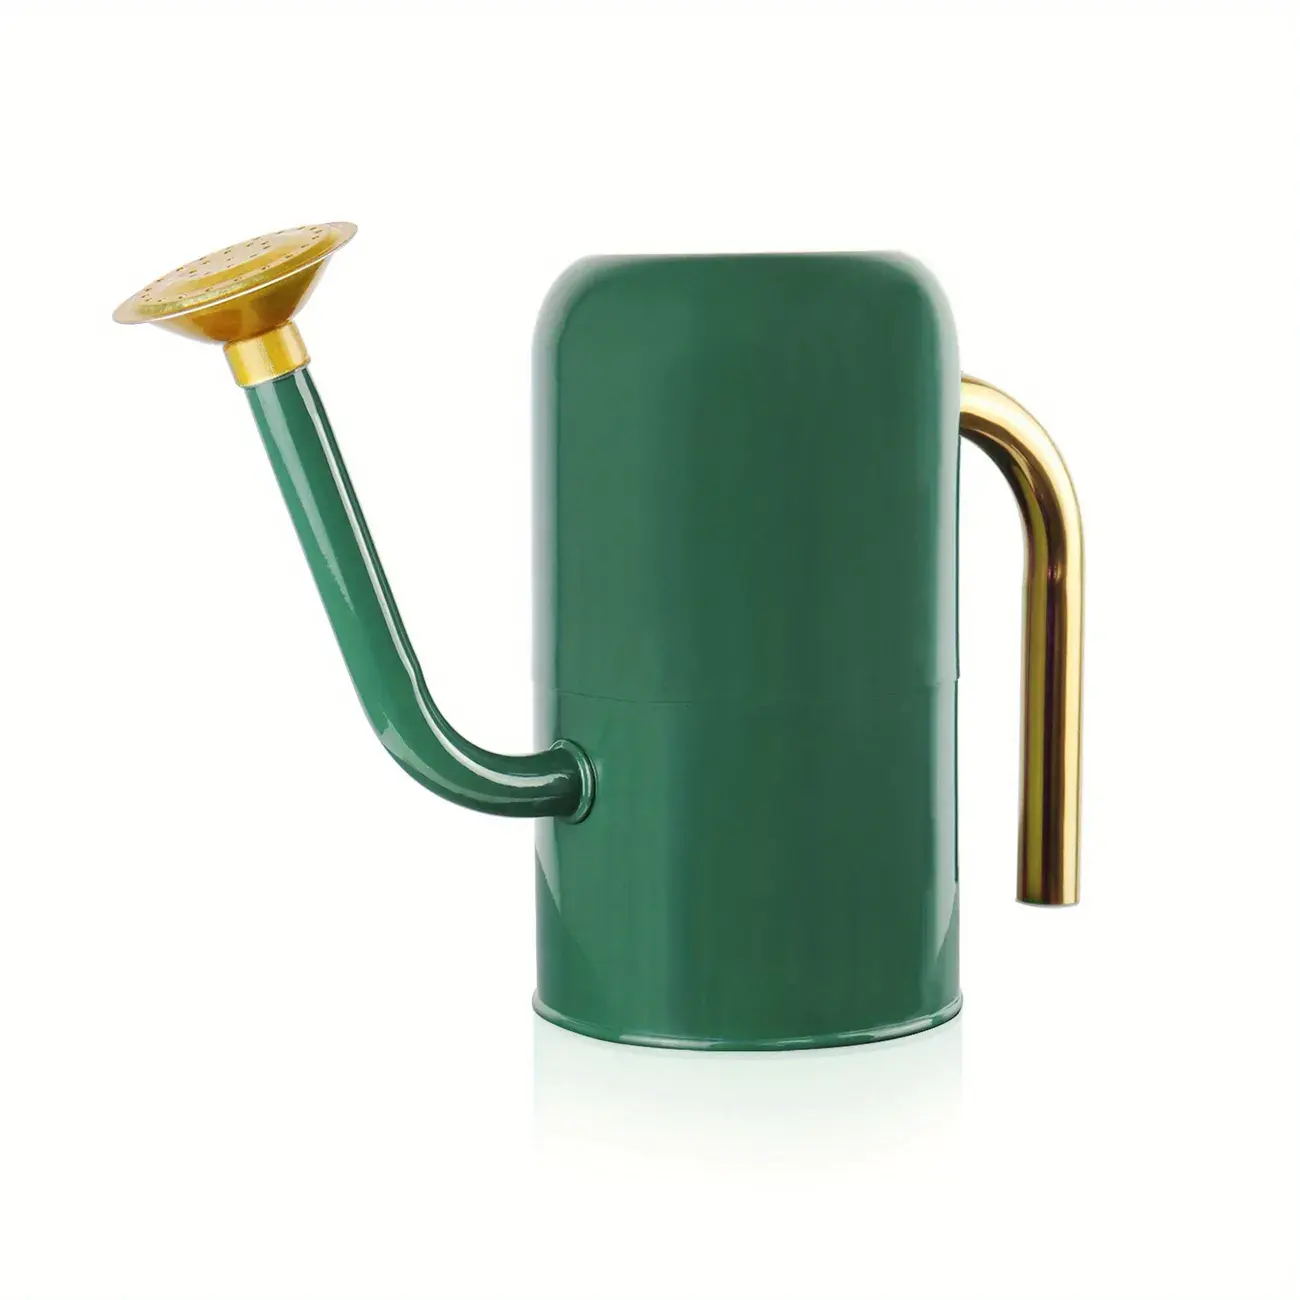 럭셔리 디자인 금속 급수 지팡이 공장 물 & 관개 수제 철 급수 지팡이 베스트 셀러 제품